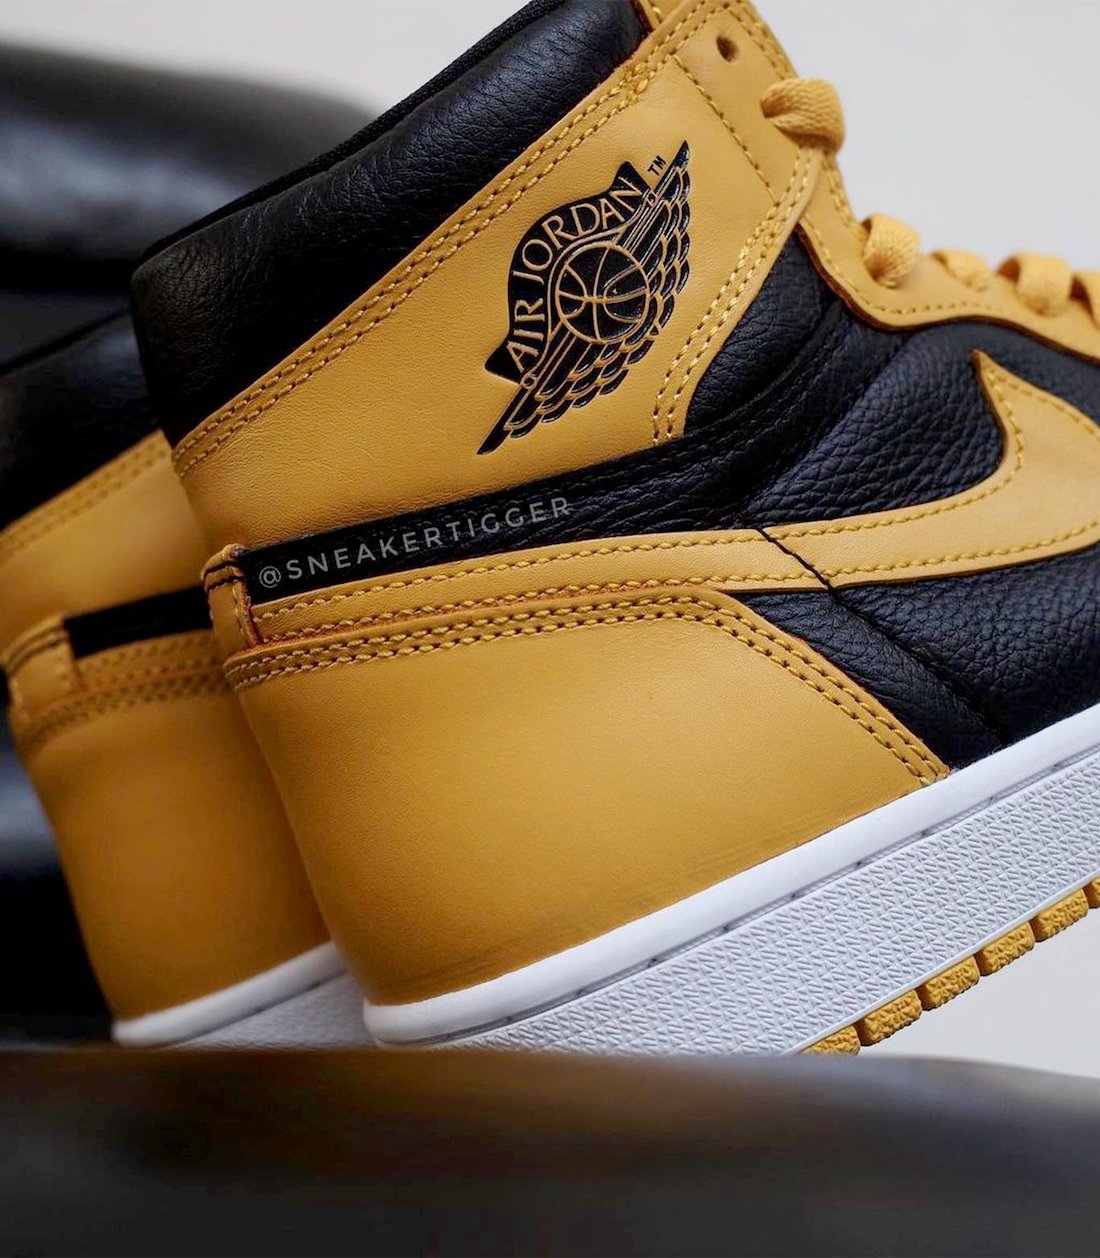 运动鞋, zsneakerheadz, Nike Air, Jordan Brand, Jordan, Black, Air Jordan 1 High OG“ Pollen”, Air Jordan 1